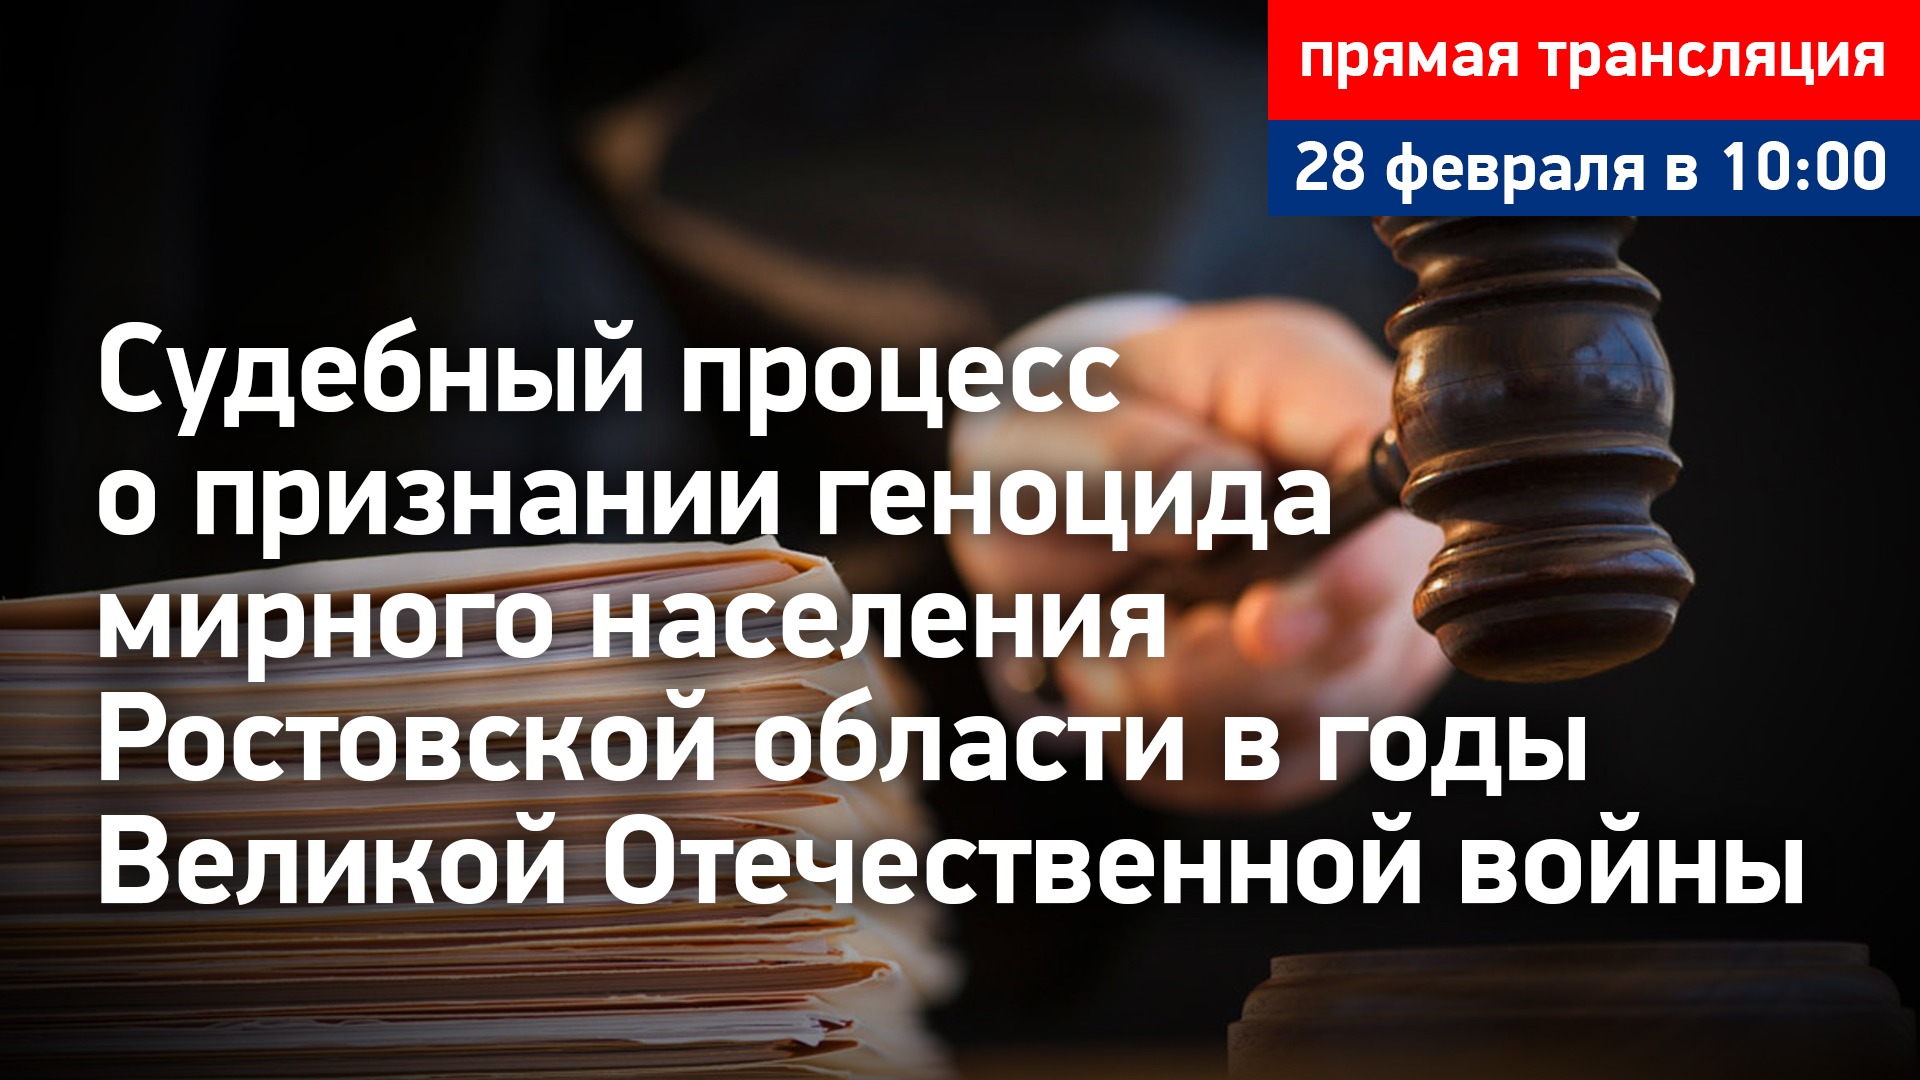 #5 Судебный процесс о признании геноцида мирного населения Ростовской области. Прямая трансляция